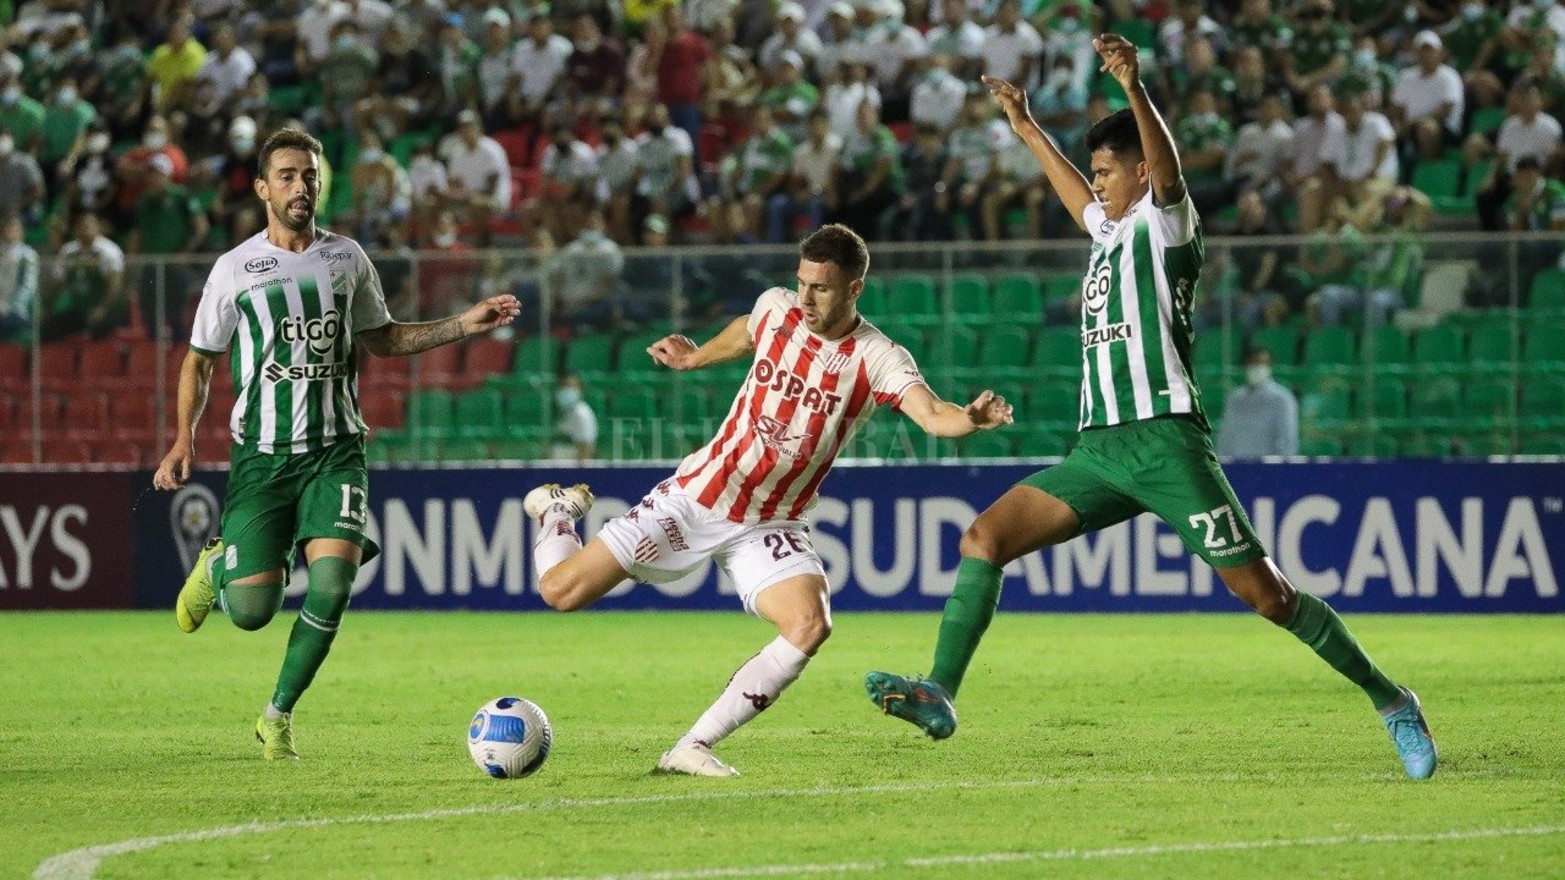 El tatengue se impuso por 3 a 1 en el estadio Ramón Aguilera Costas de la ciudad de Santa Cruz de la Sierra. Calderón, Peralta Bauer y Juárez fueron los autores de los goles.